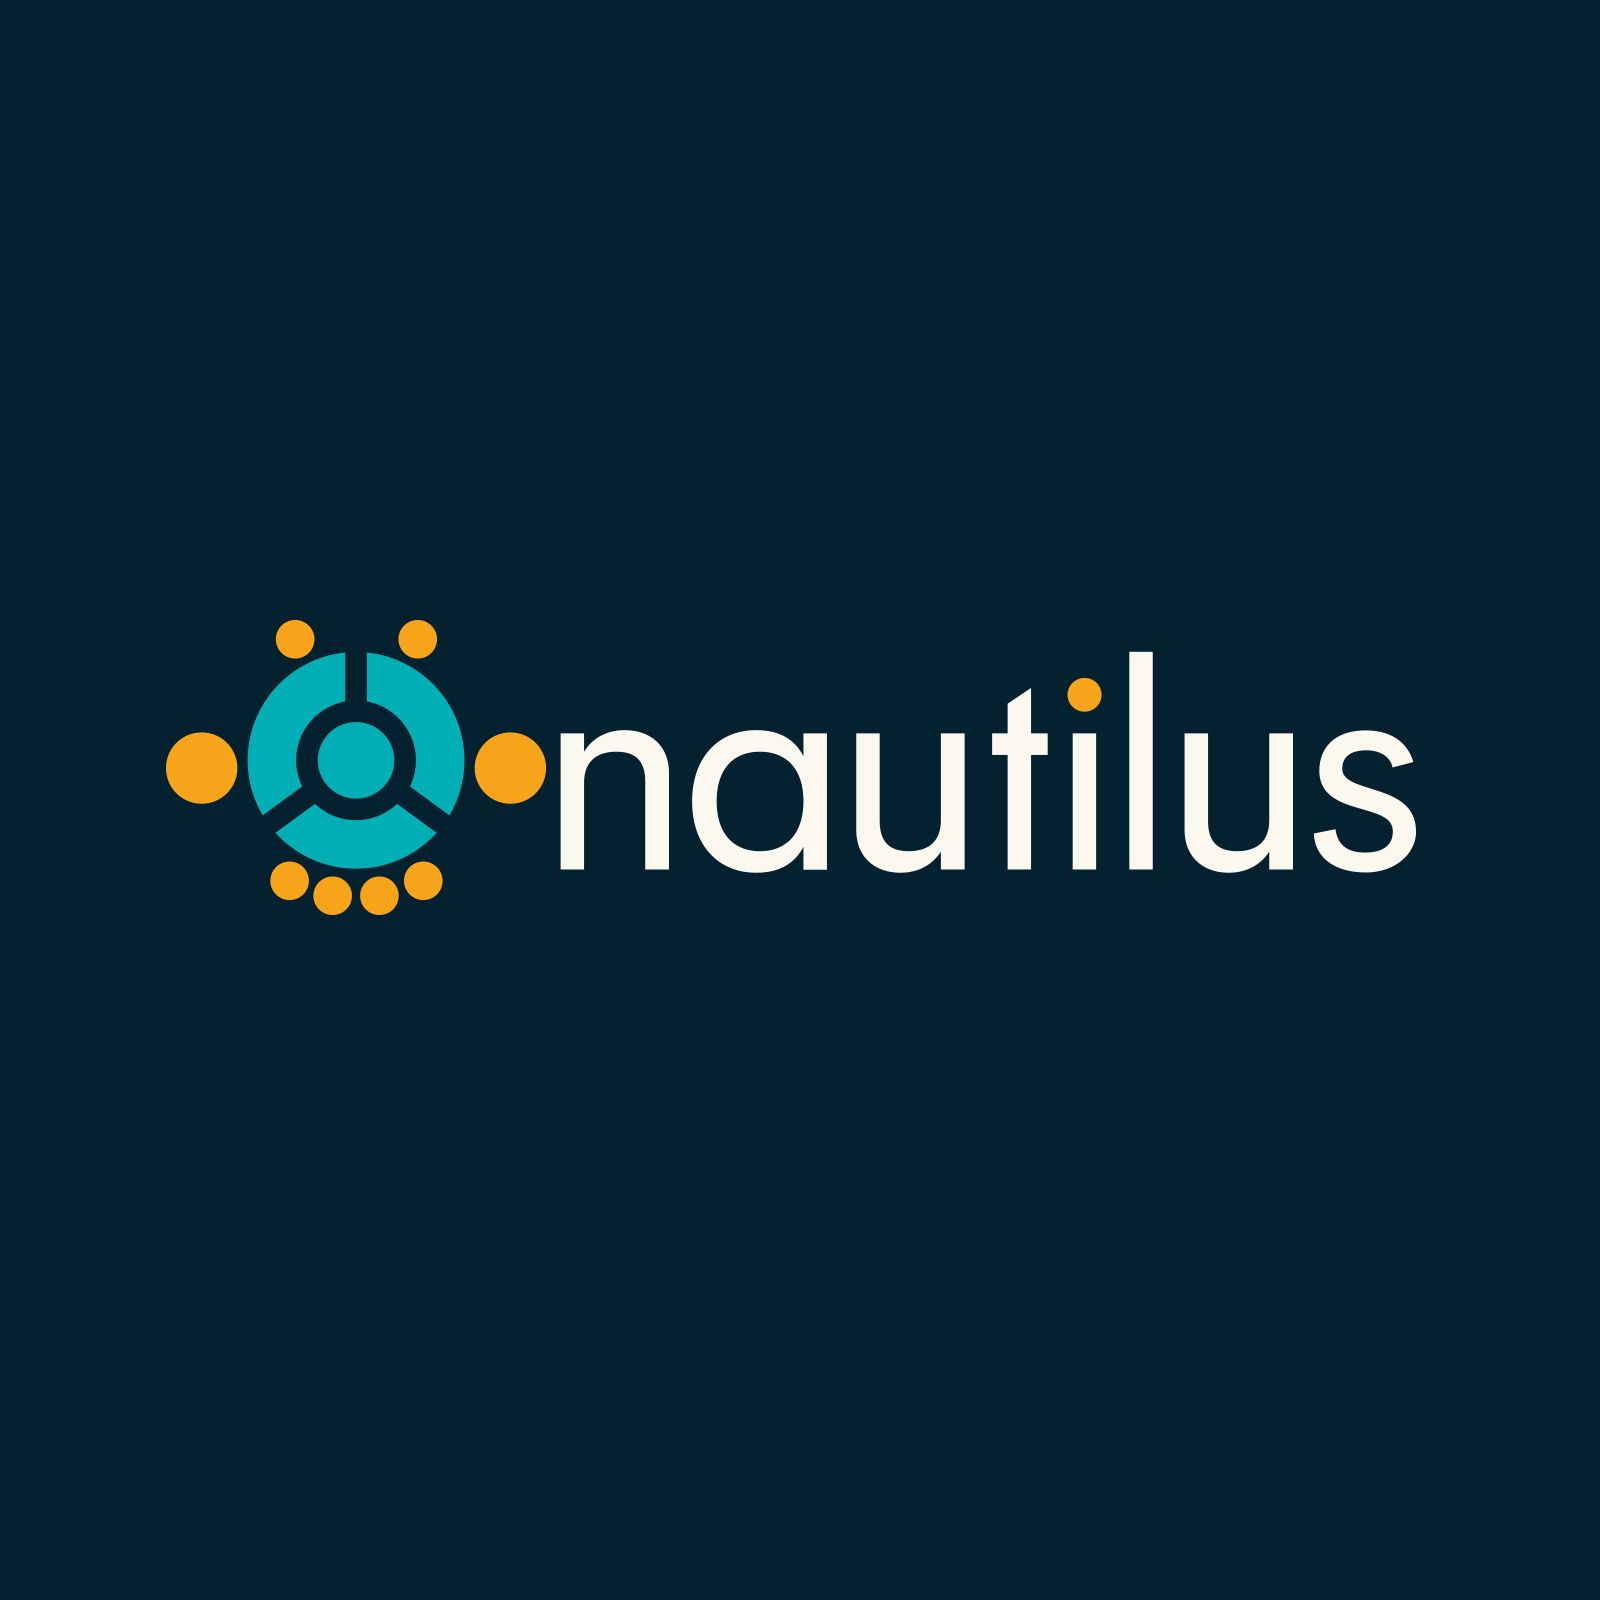 Nautilus Education Ltd